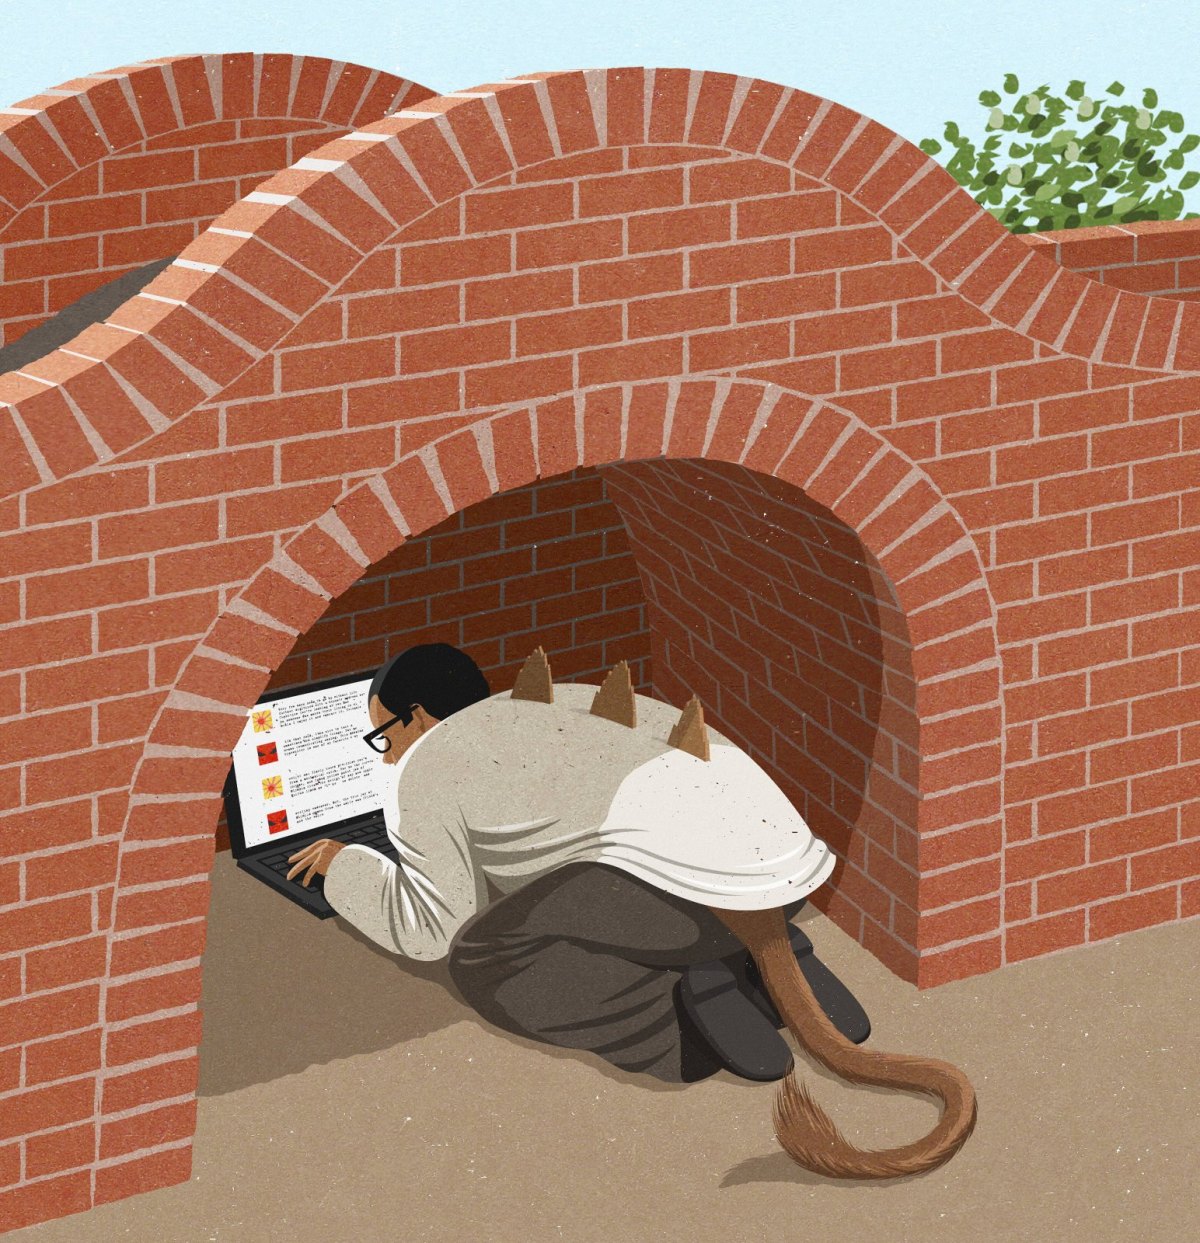 Mann als Internet-Troll versteckt sich unter einer Brücke (Illustration)